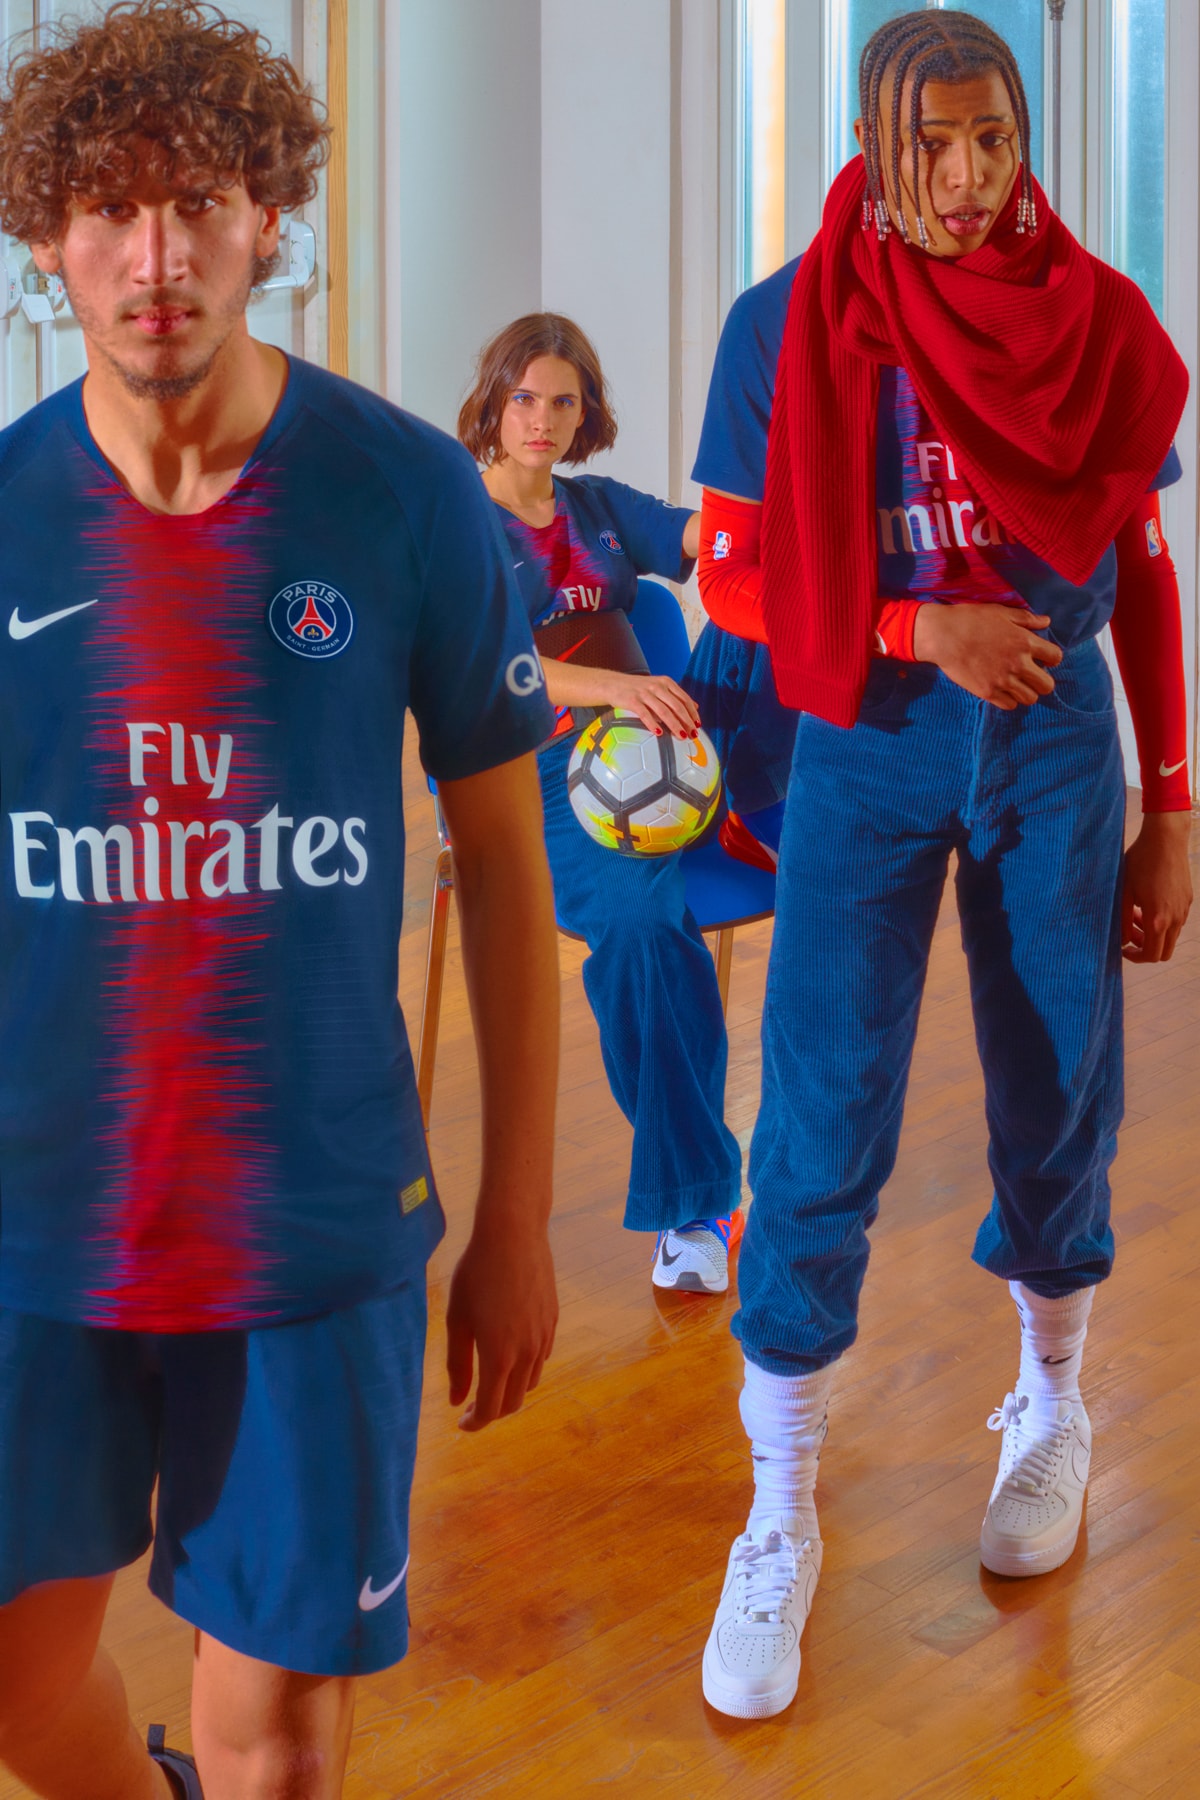 Paris Saint-Germain's 2018/19 Home Kit